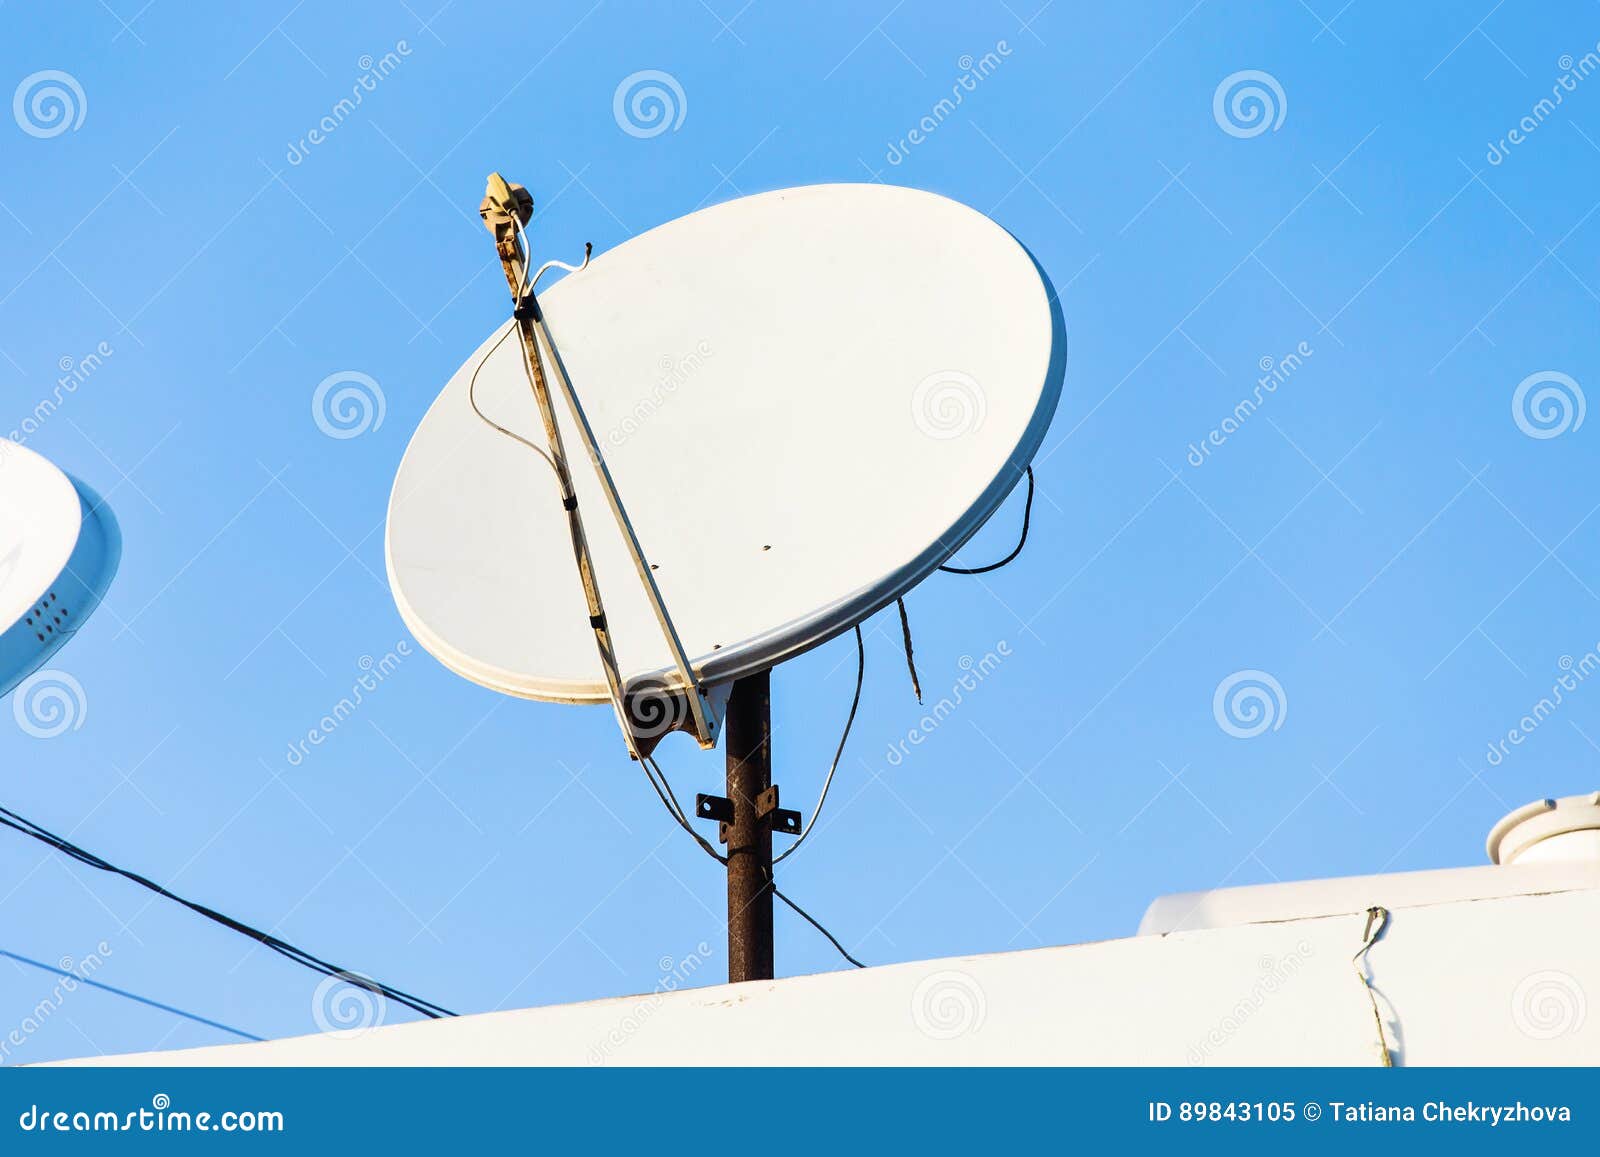 Antena Parabólica Y Antenas De TV En El Tejado De La Casa Con El Fondo Del  Cielo Azul Imagen de archivo - Imagen de aéreo, satélite: 89843105